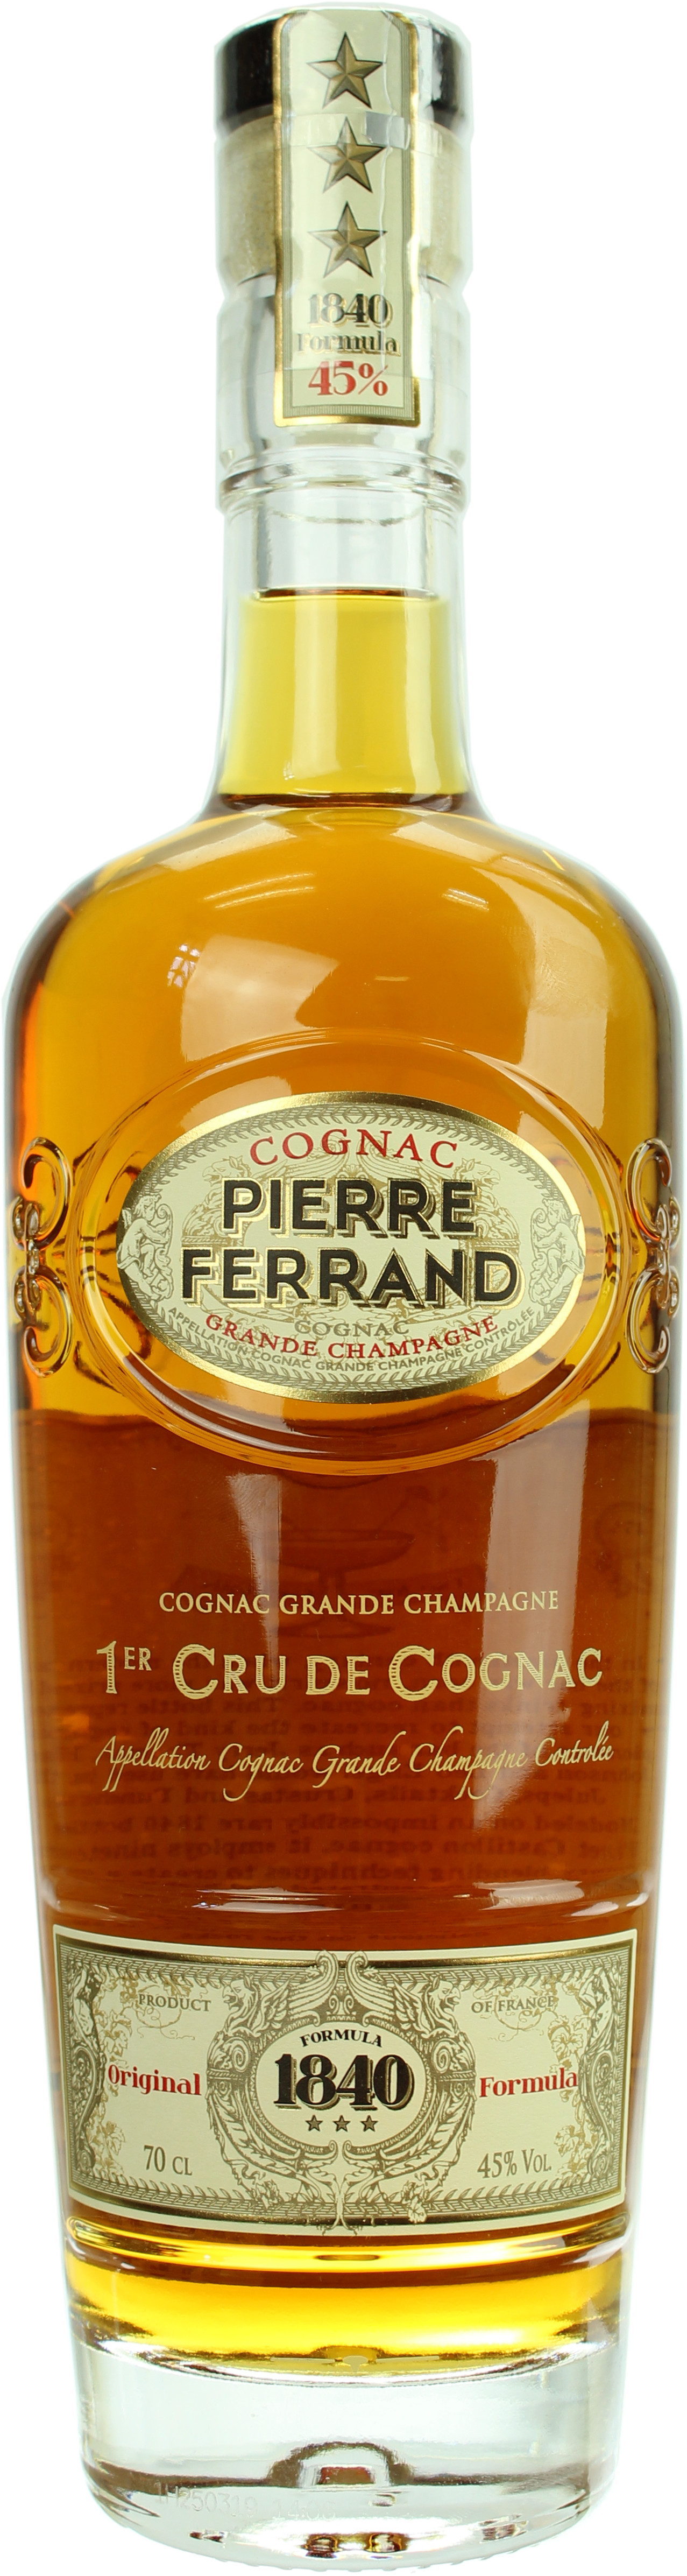 Pierre Ferrand Cognac 1840 1er Cru Grand Champagne 45.0% 0,7l